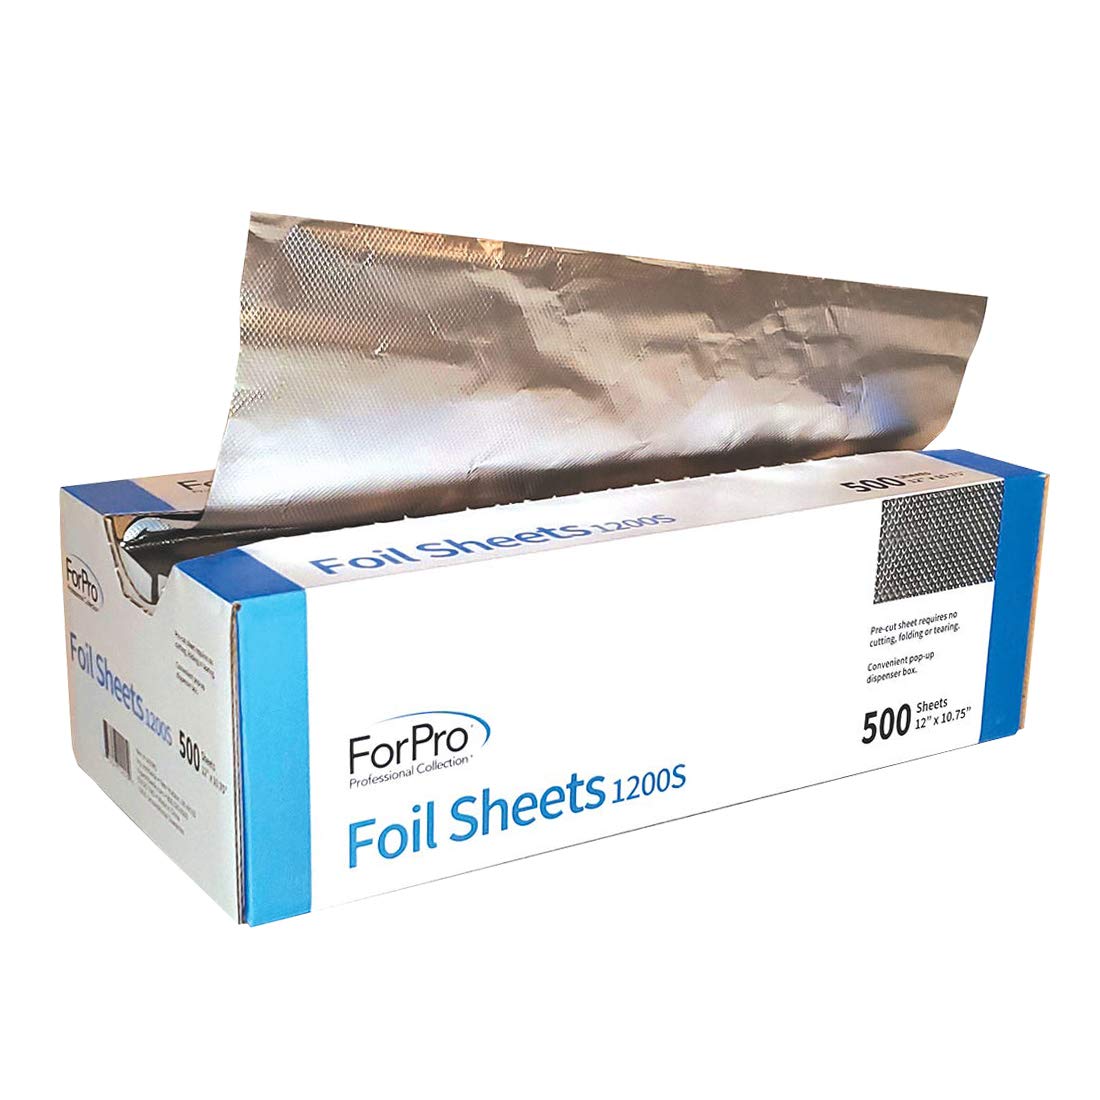 Progress Aluminum Foil Sheets – Progress Essentials